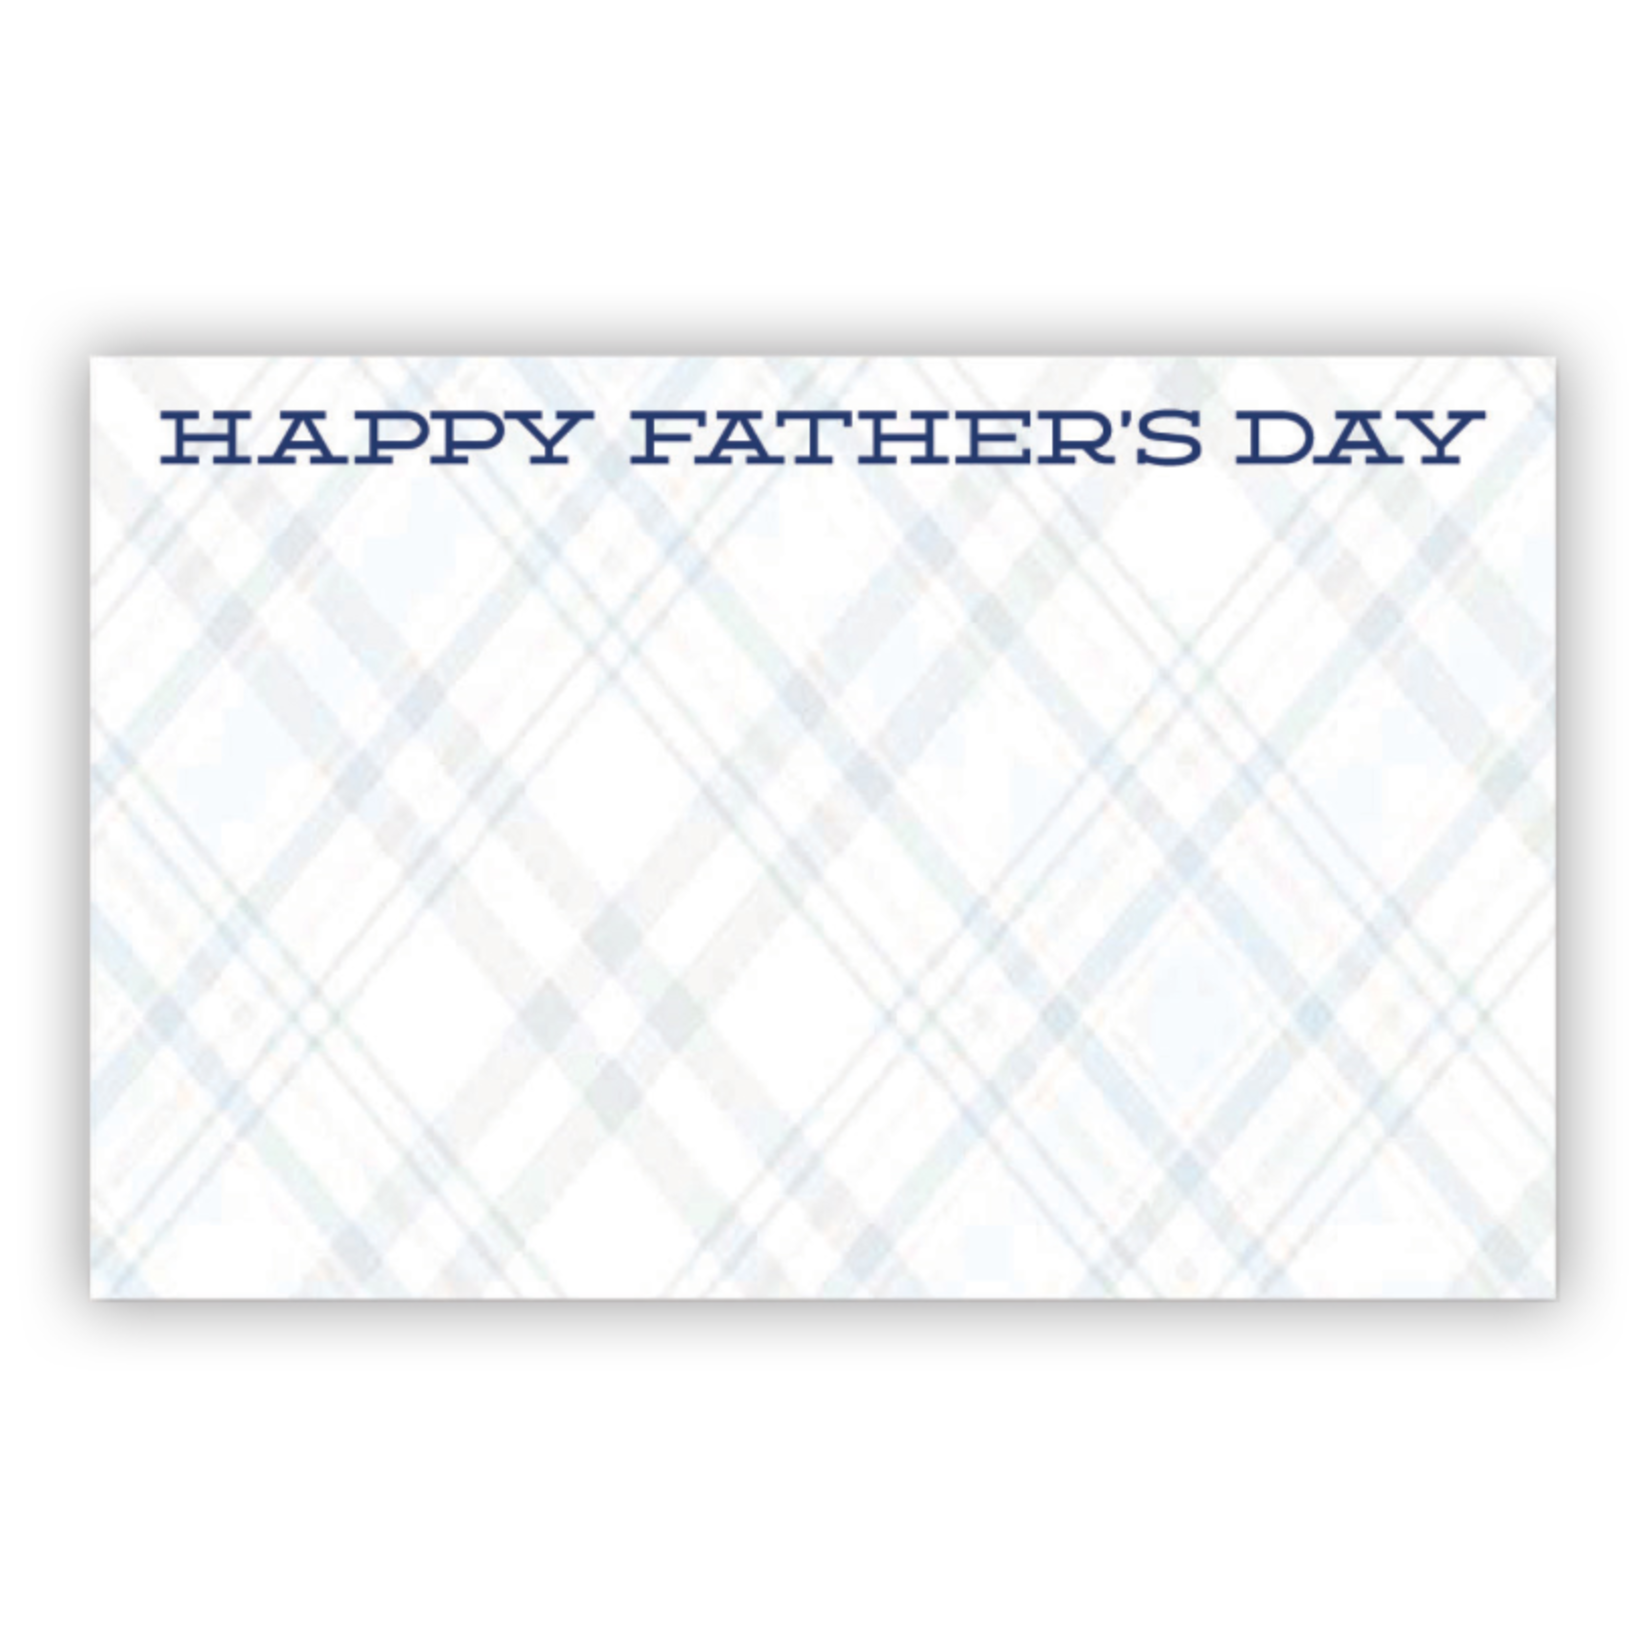 “HAPPY FATHER’S DAY” CAPRI CARD